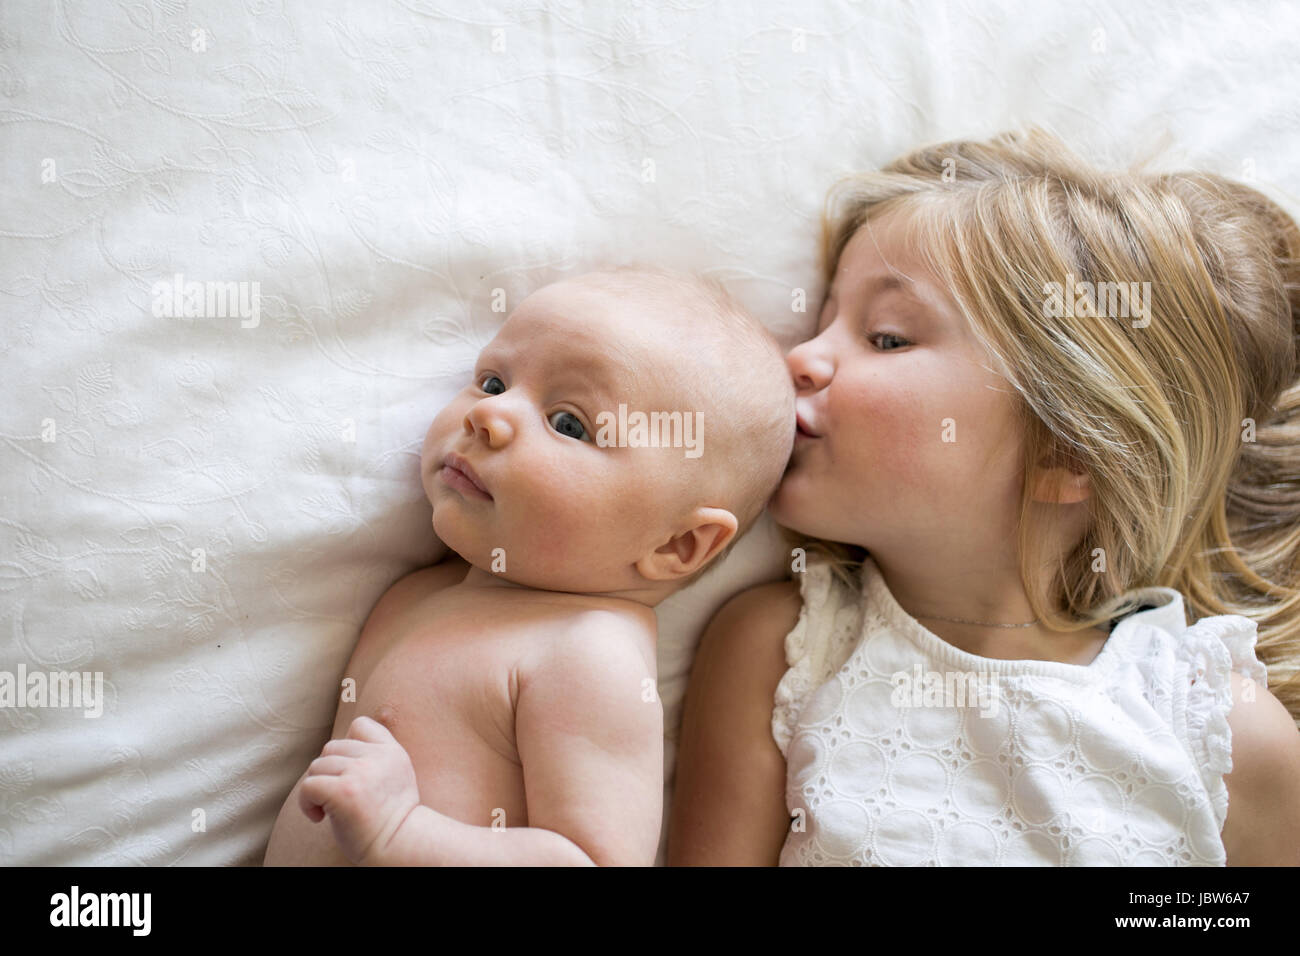 Draufsicht von jungen Mädchen und Baby Bruder Mädchen küssen Baby Bruder auf Bett, liegend Stockfoto